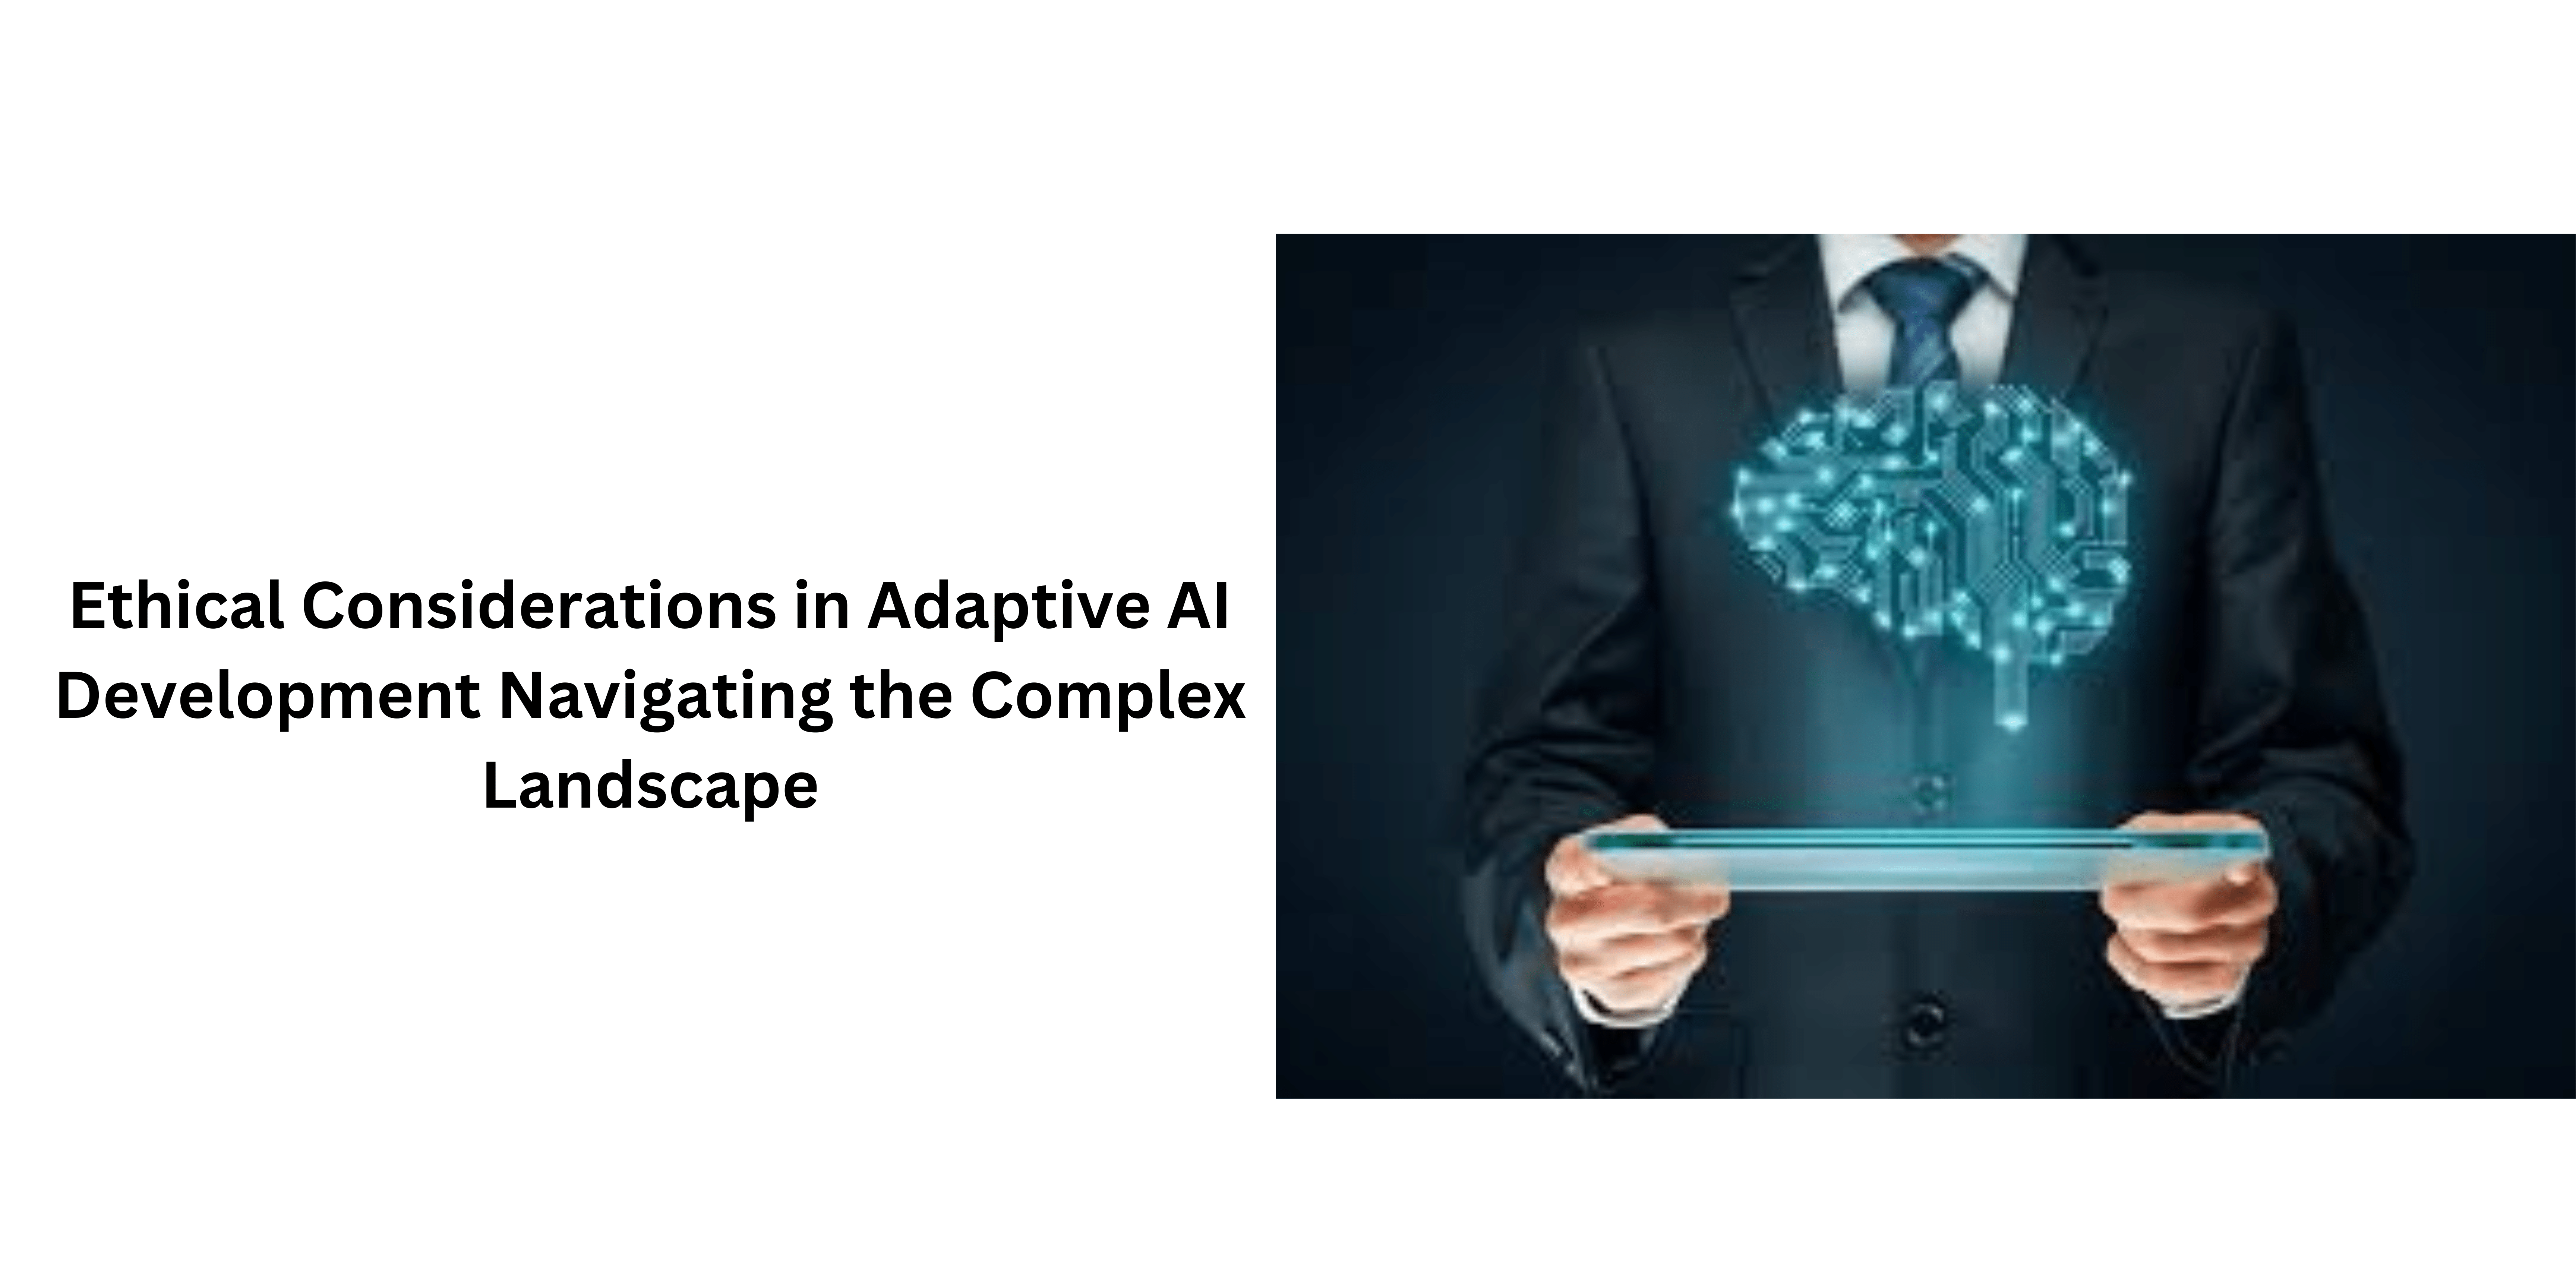 Adaptive AI